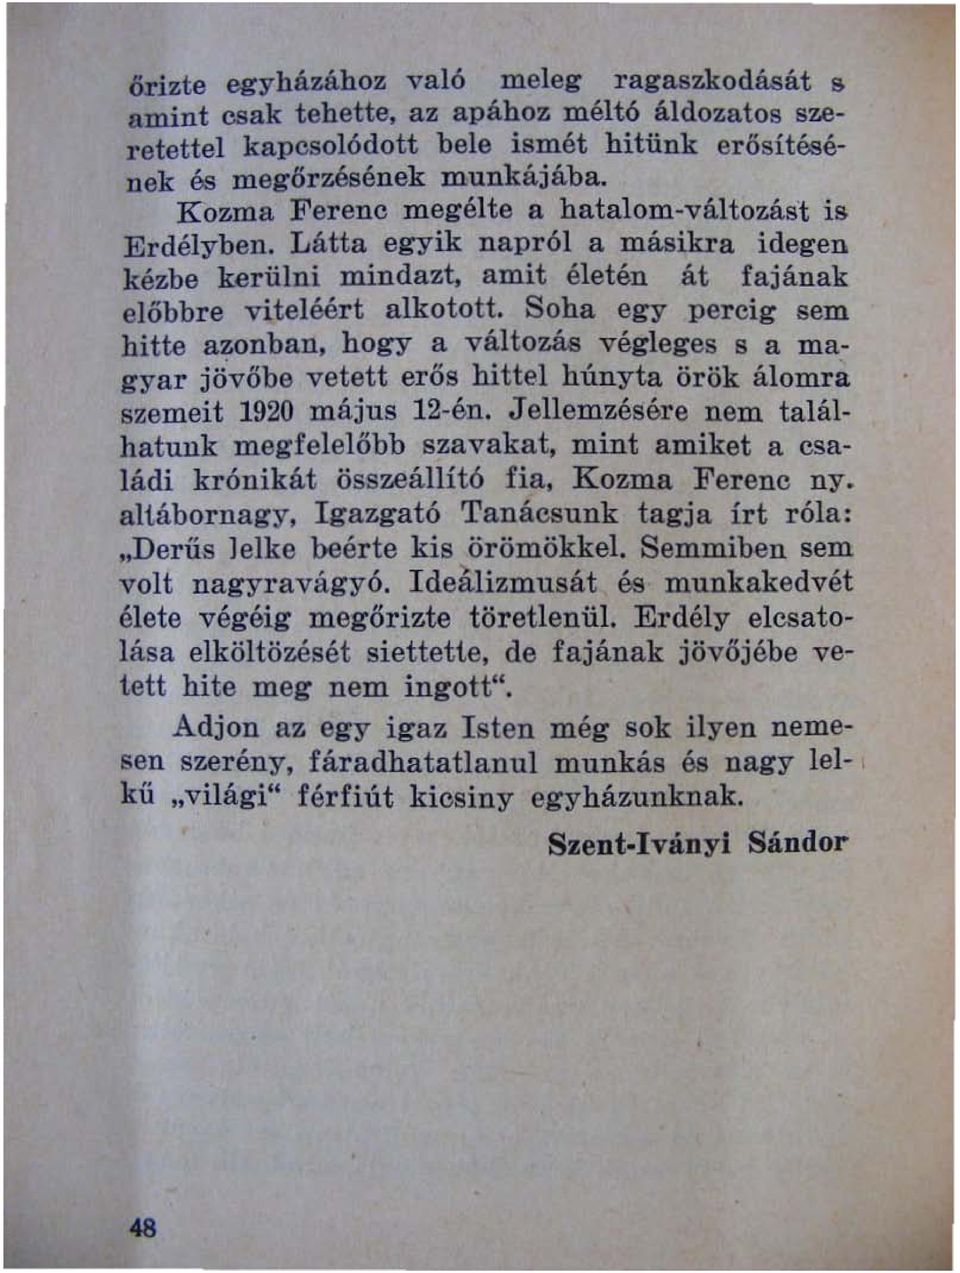 . Soha egy percig sem hitte azonban, hogy a változás végleges s a magyar jövőbe vetett erős hittel húnyta örök álomra szemeit 1920 május 12-én.